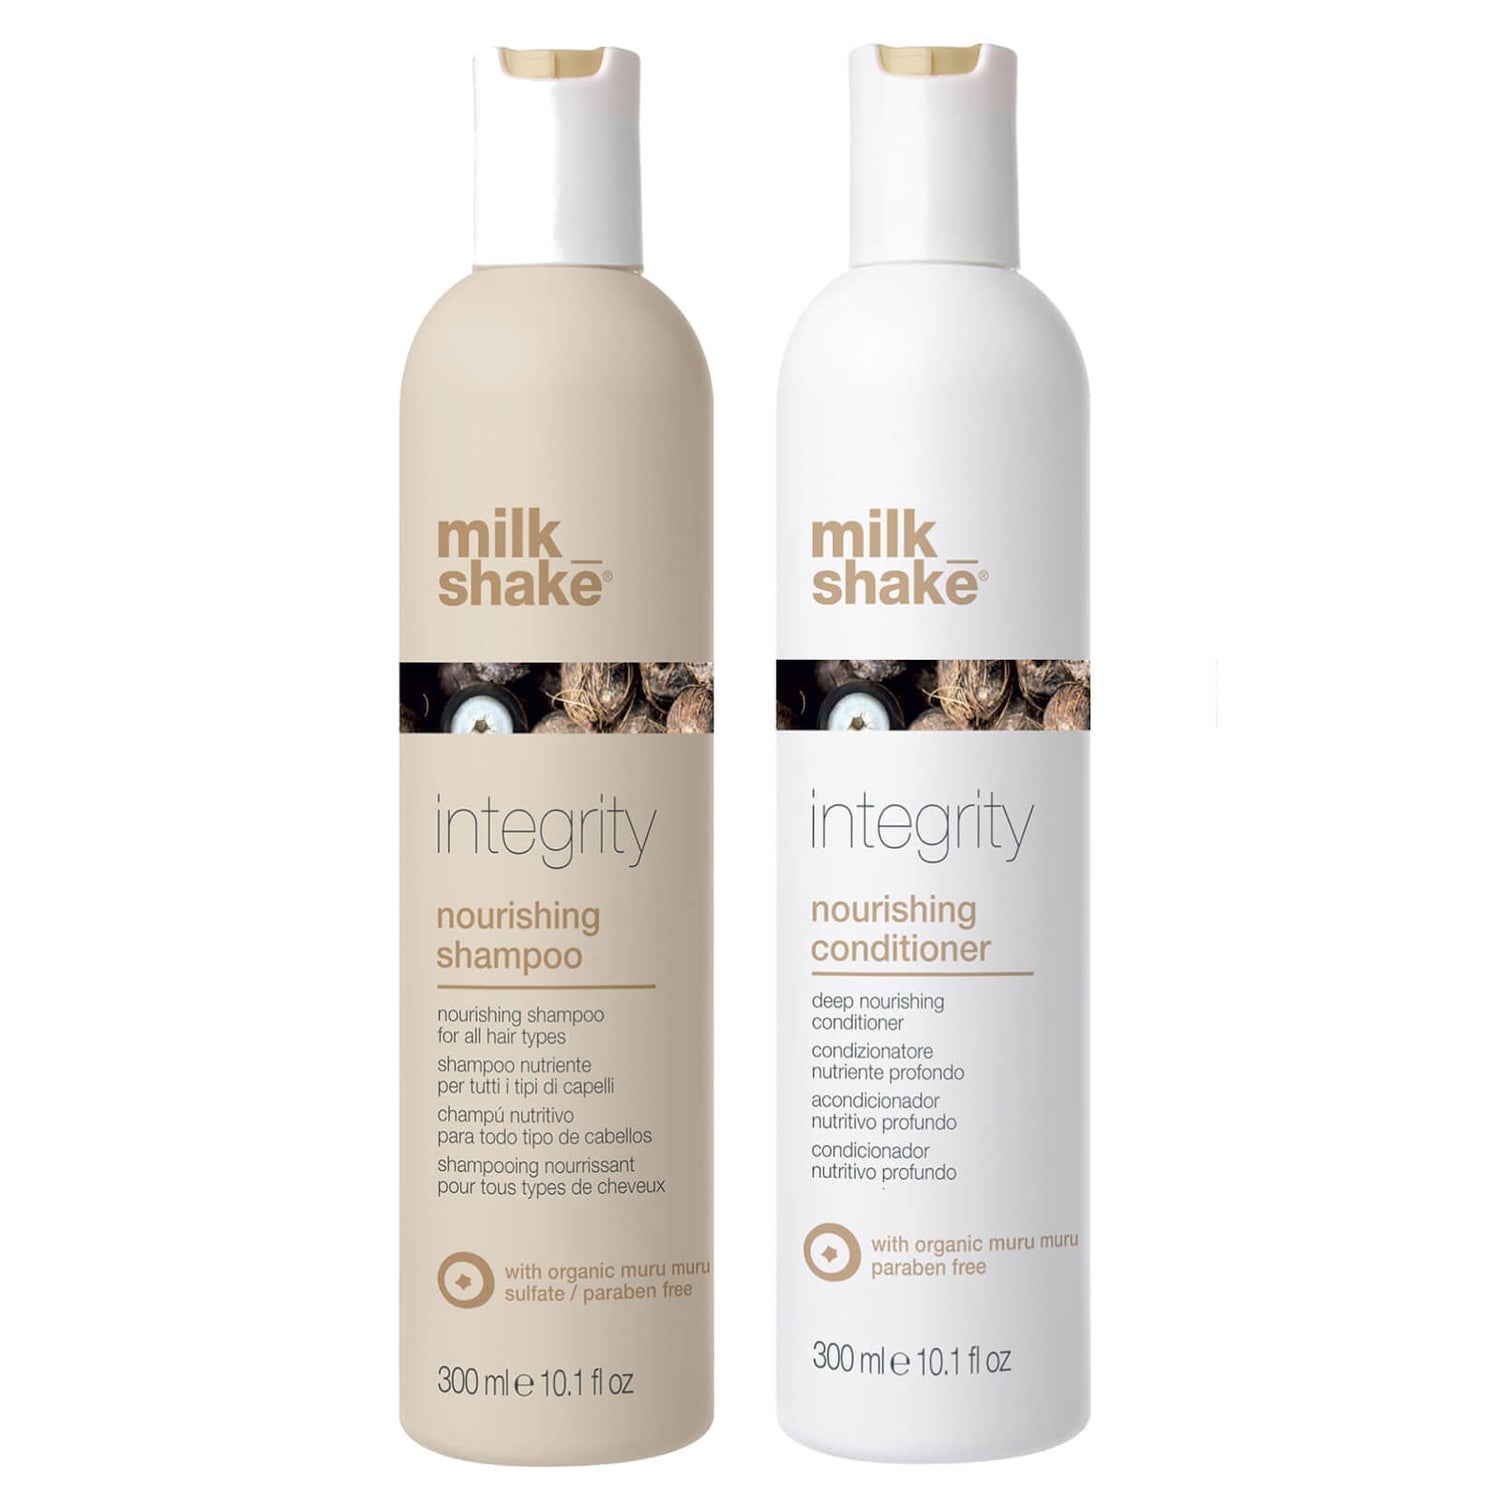 Milkshake integrity nourishing 300ml Duo